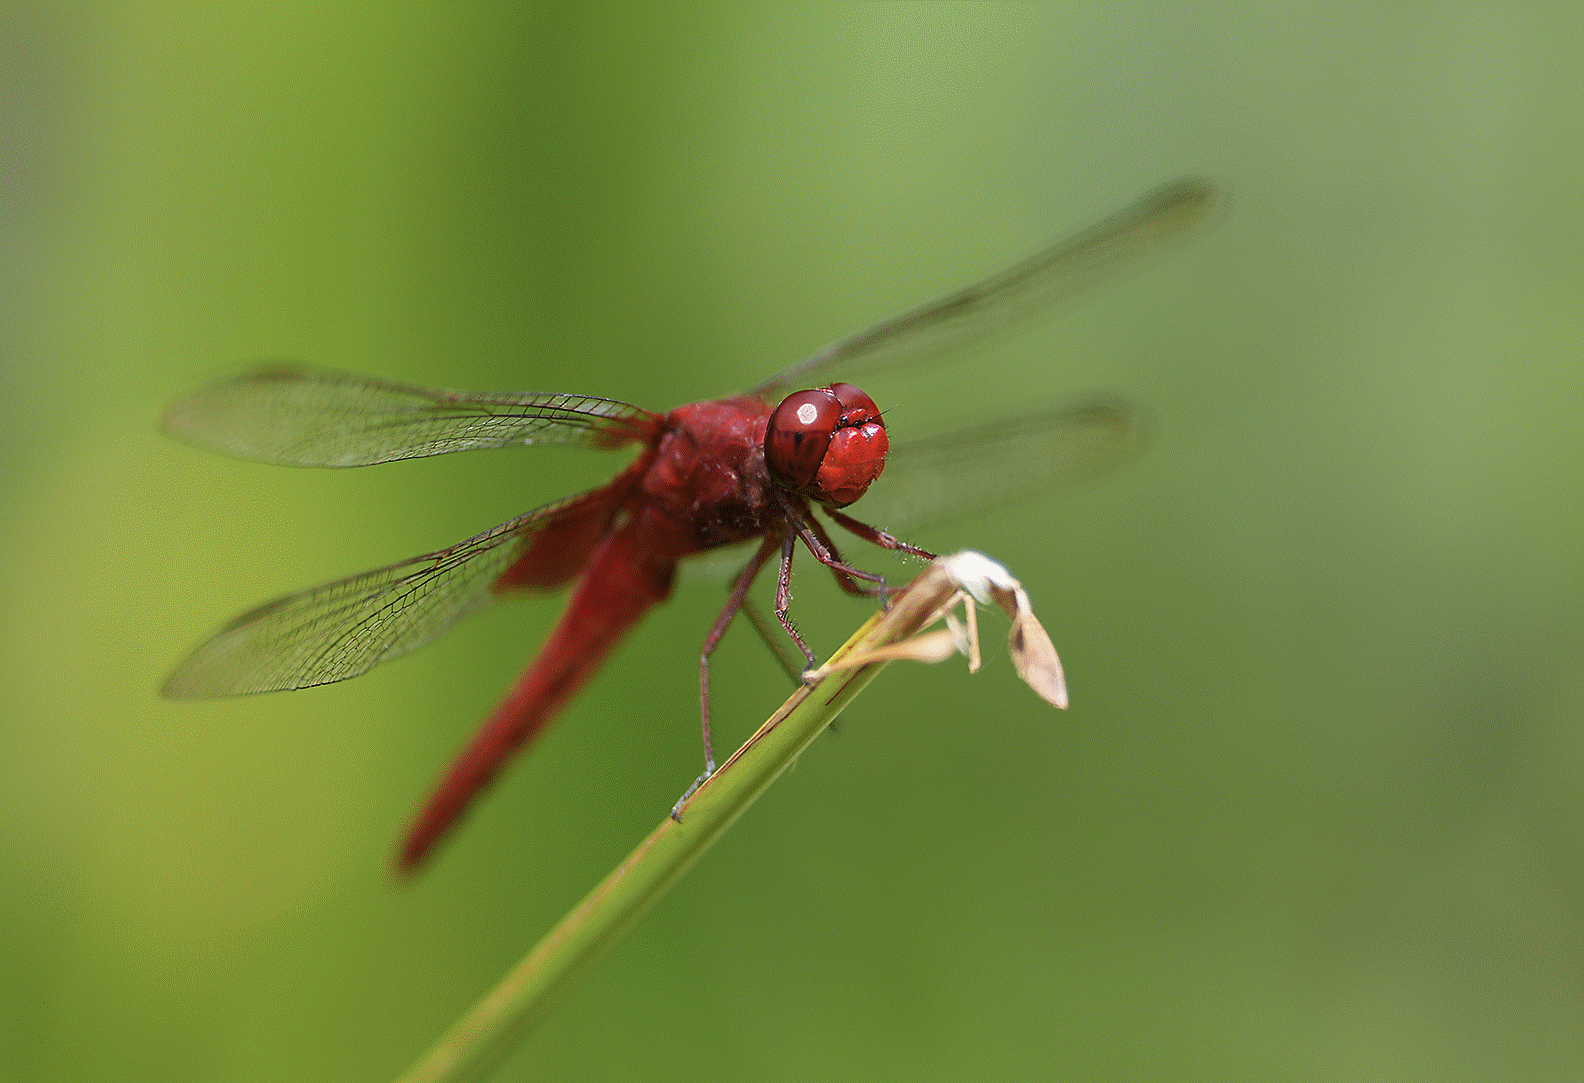 Imagen de una libélula en una rama